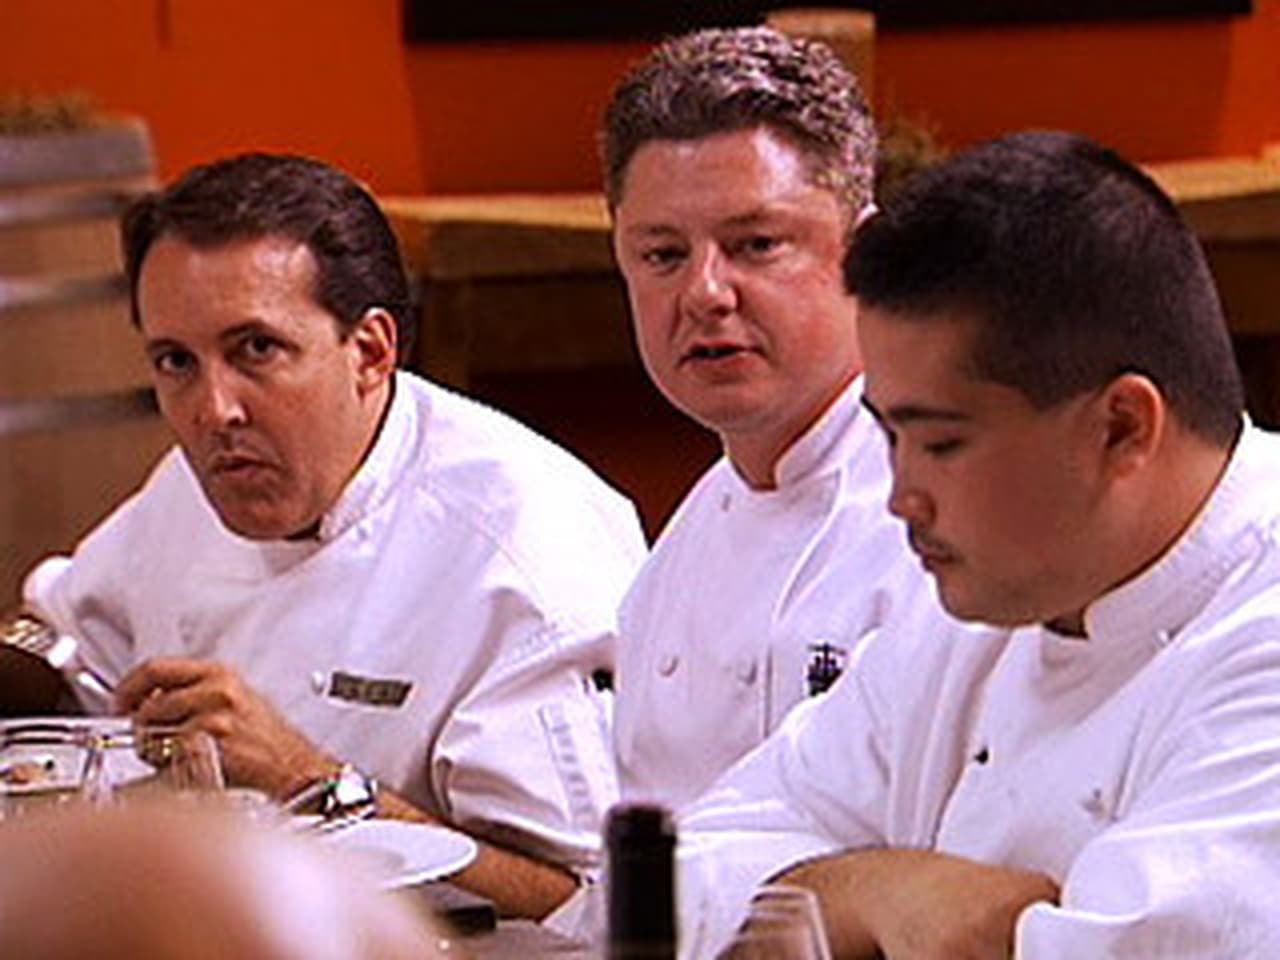 Top Chef - Season 1 Episode 9 : Napa's Finest